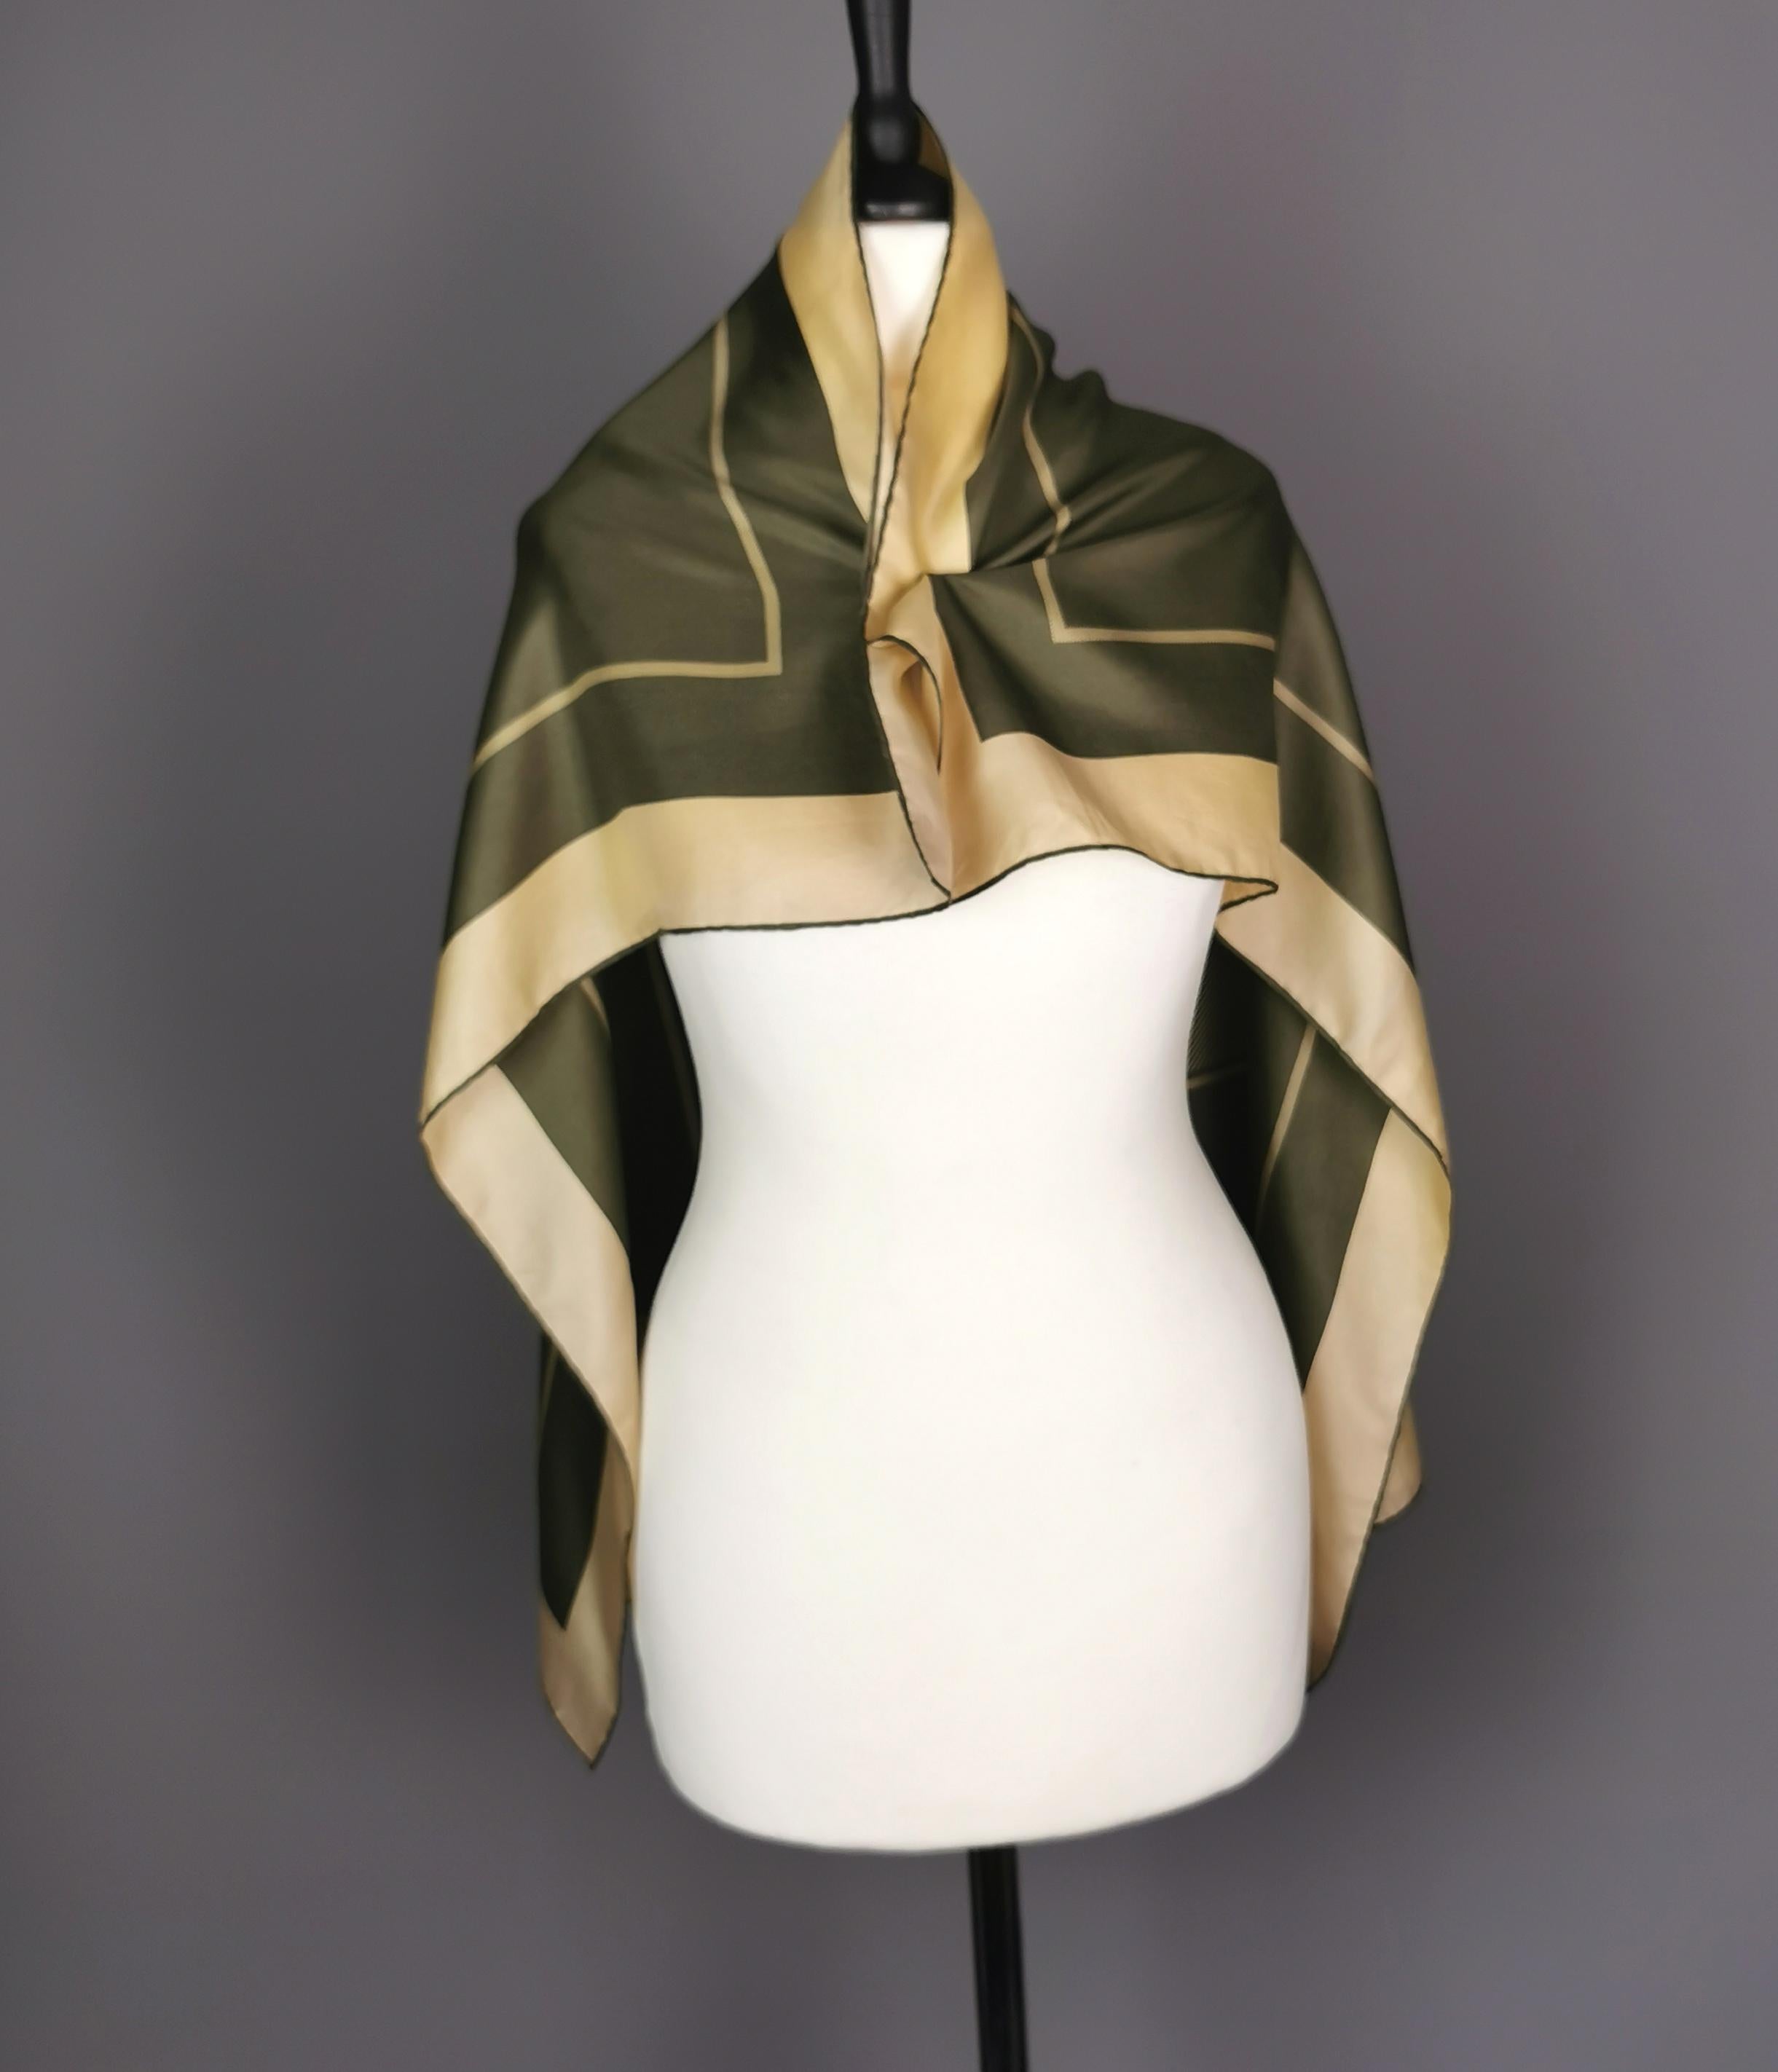 Un magnifique foulard en soie Burberry des années 70.

Fini dans les couleurs vert kaki et beige doré, c'est une écharpe de forme carrée avec une bordure de bloc et une bordure de rayure horizontale et un carré central.

Il est orné du logo Burberry